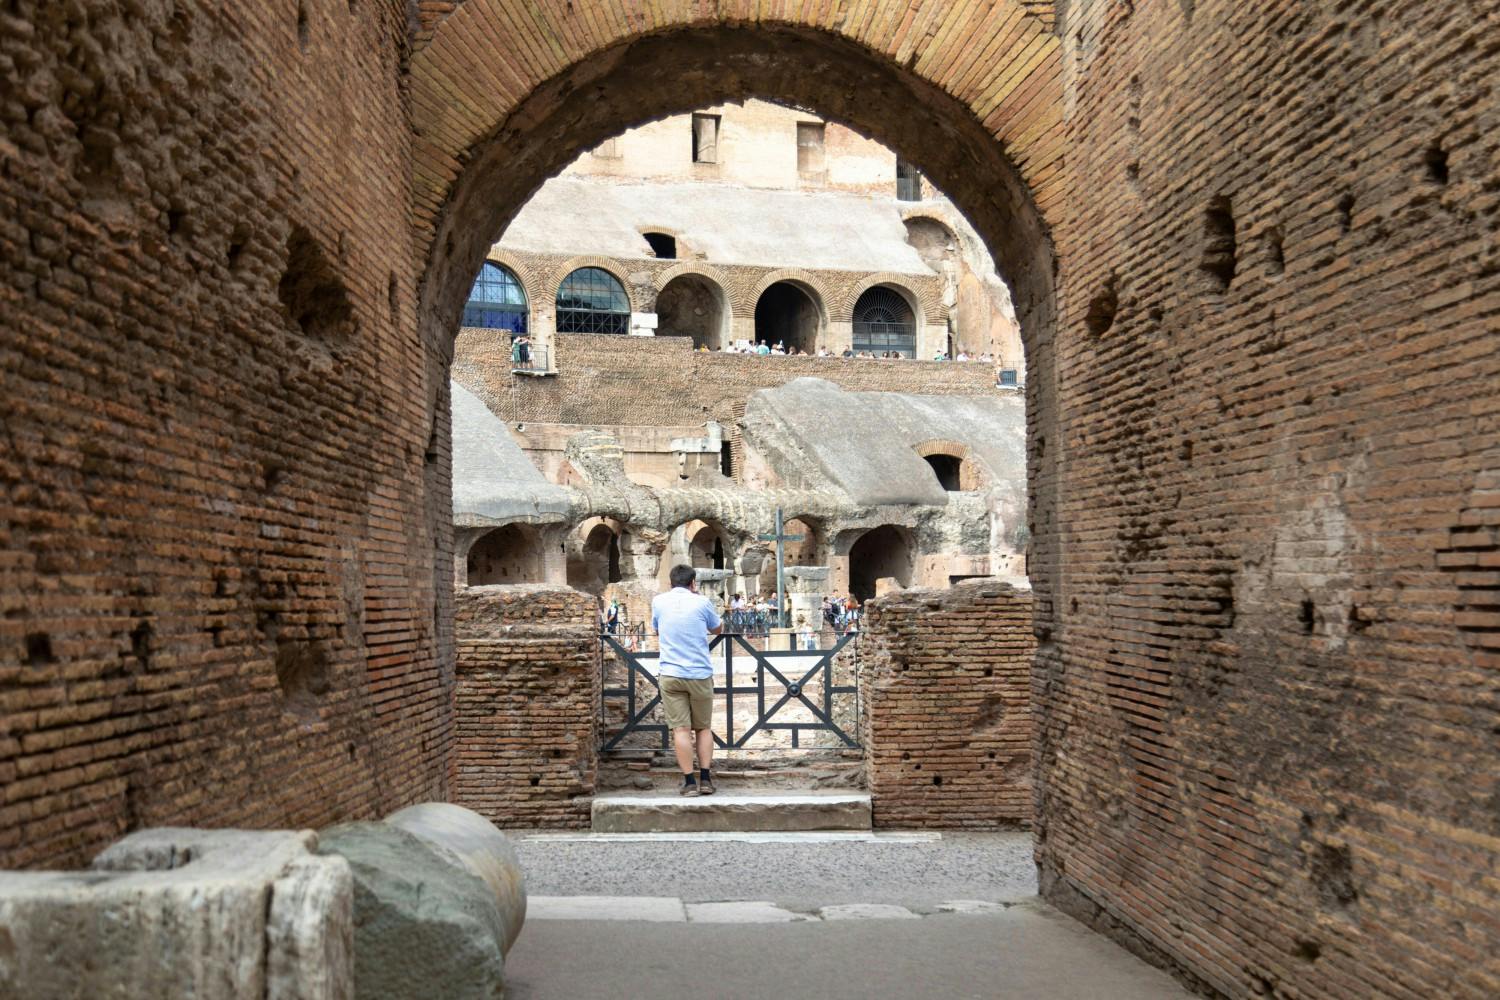 Italy_Rome_The_Colosseum_35_JPG.jpg